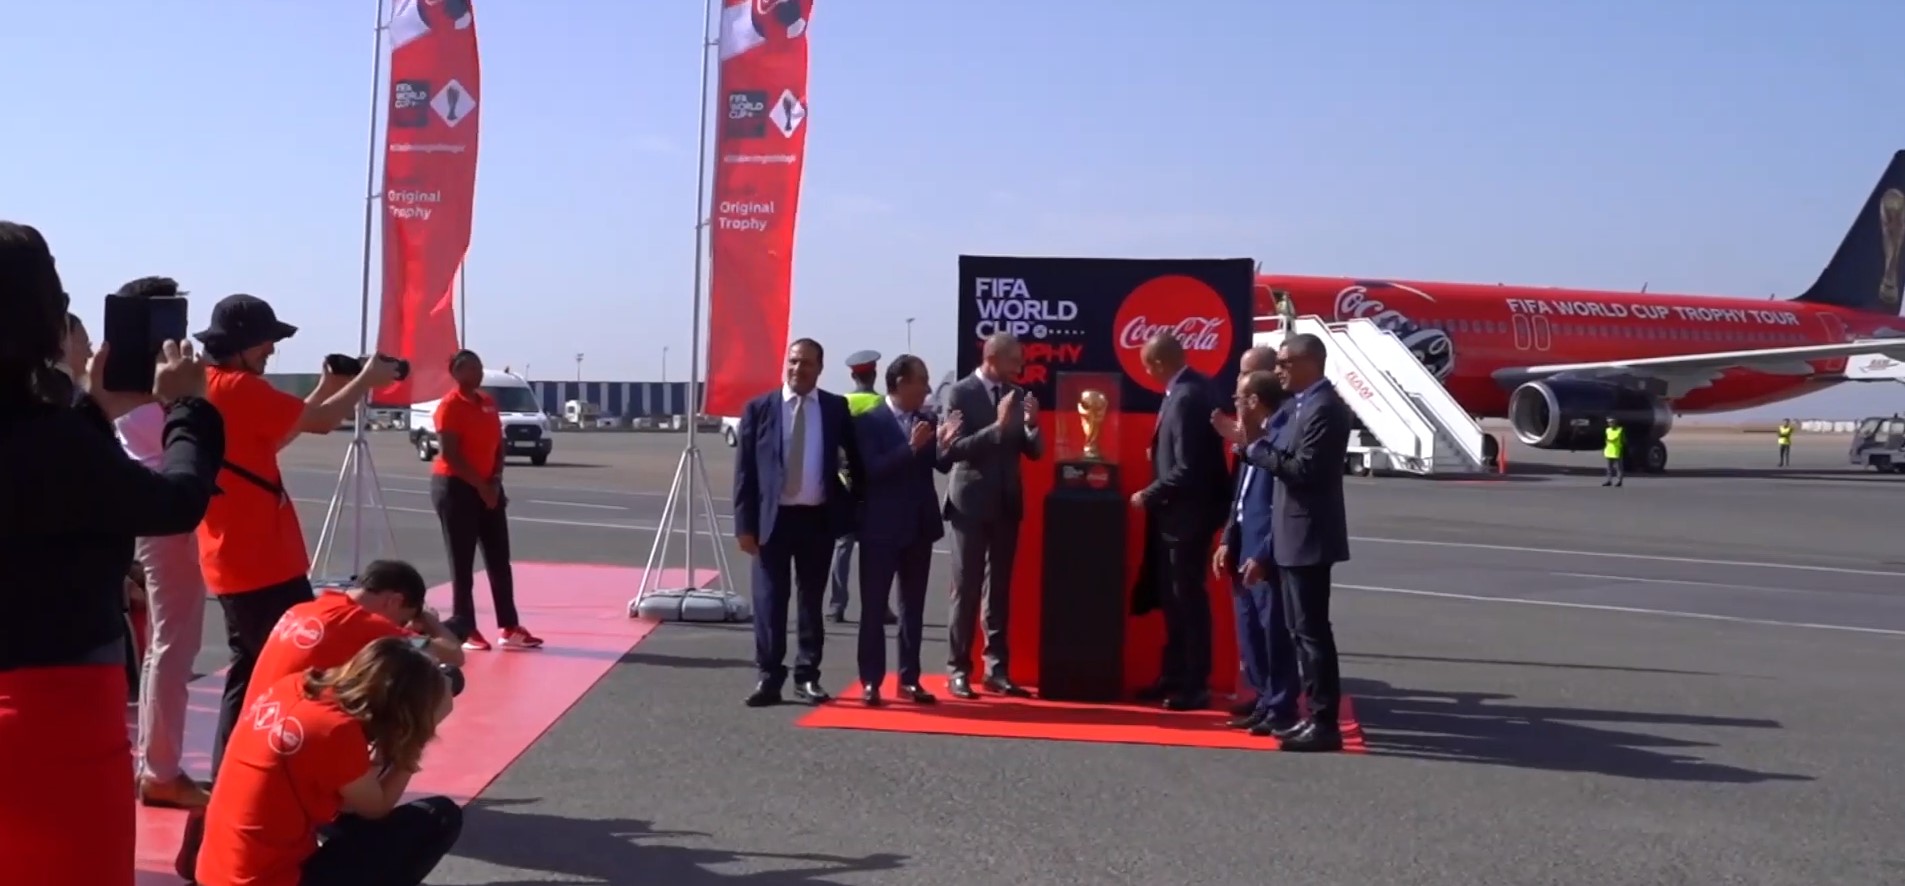 FIFA World Cup™ Trophy Tour by Coca-Cola à Casablanca